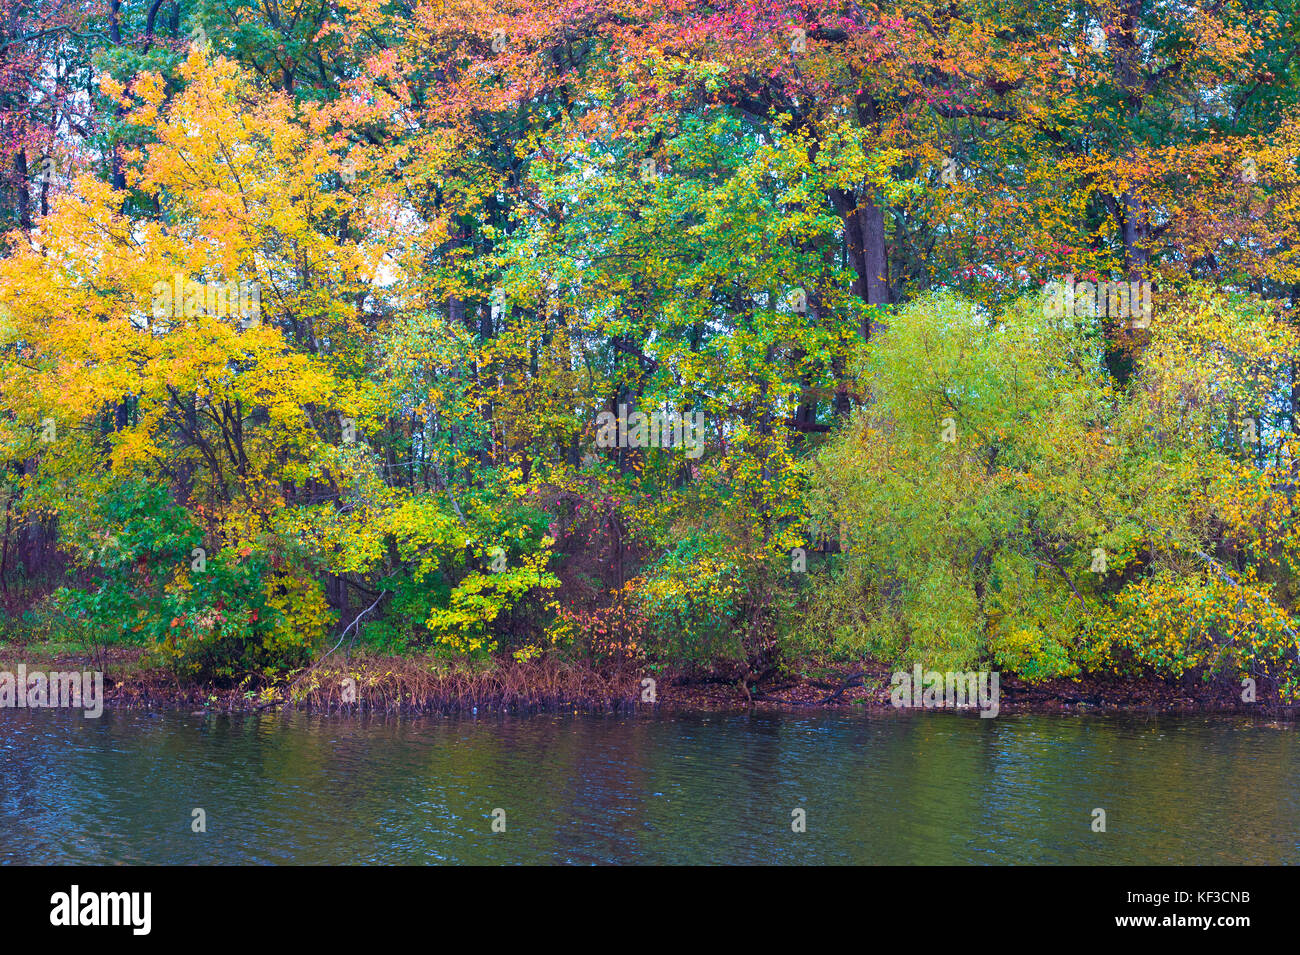 Los árboles con hojas de colores brillantes, giro en otoño están en la orilla de un lago. Foto de stock